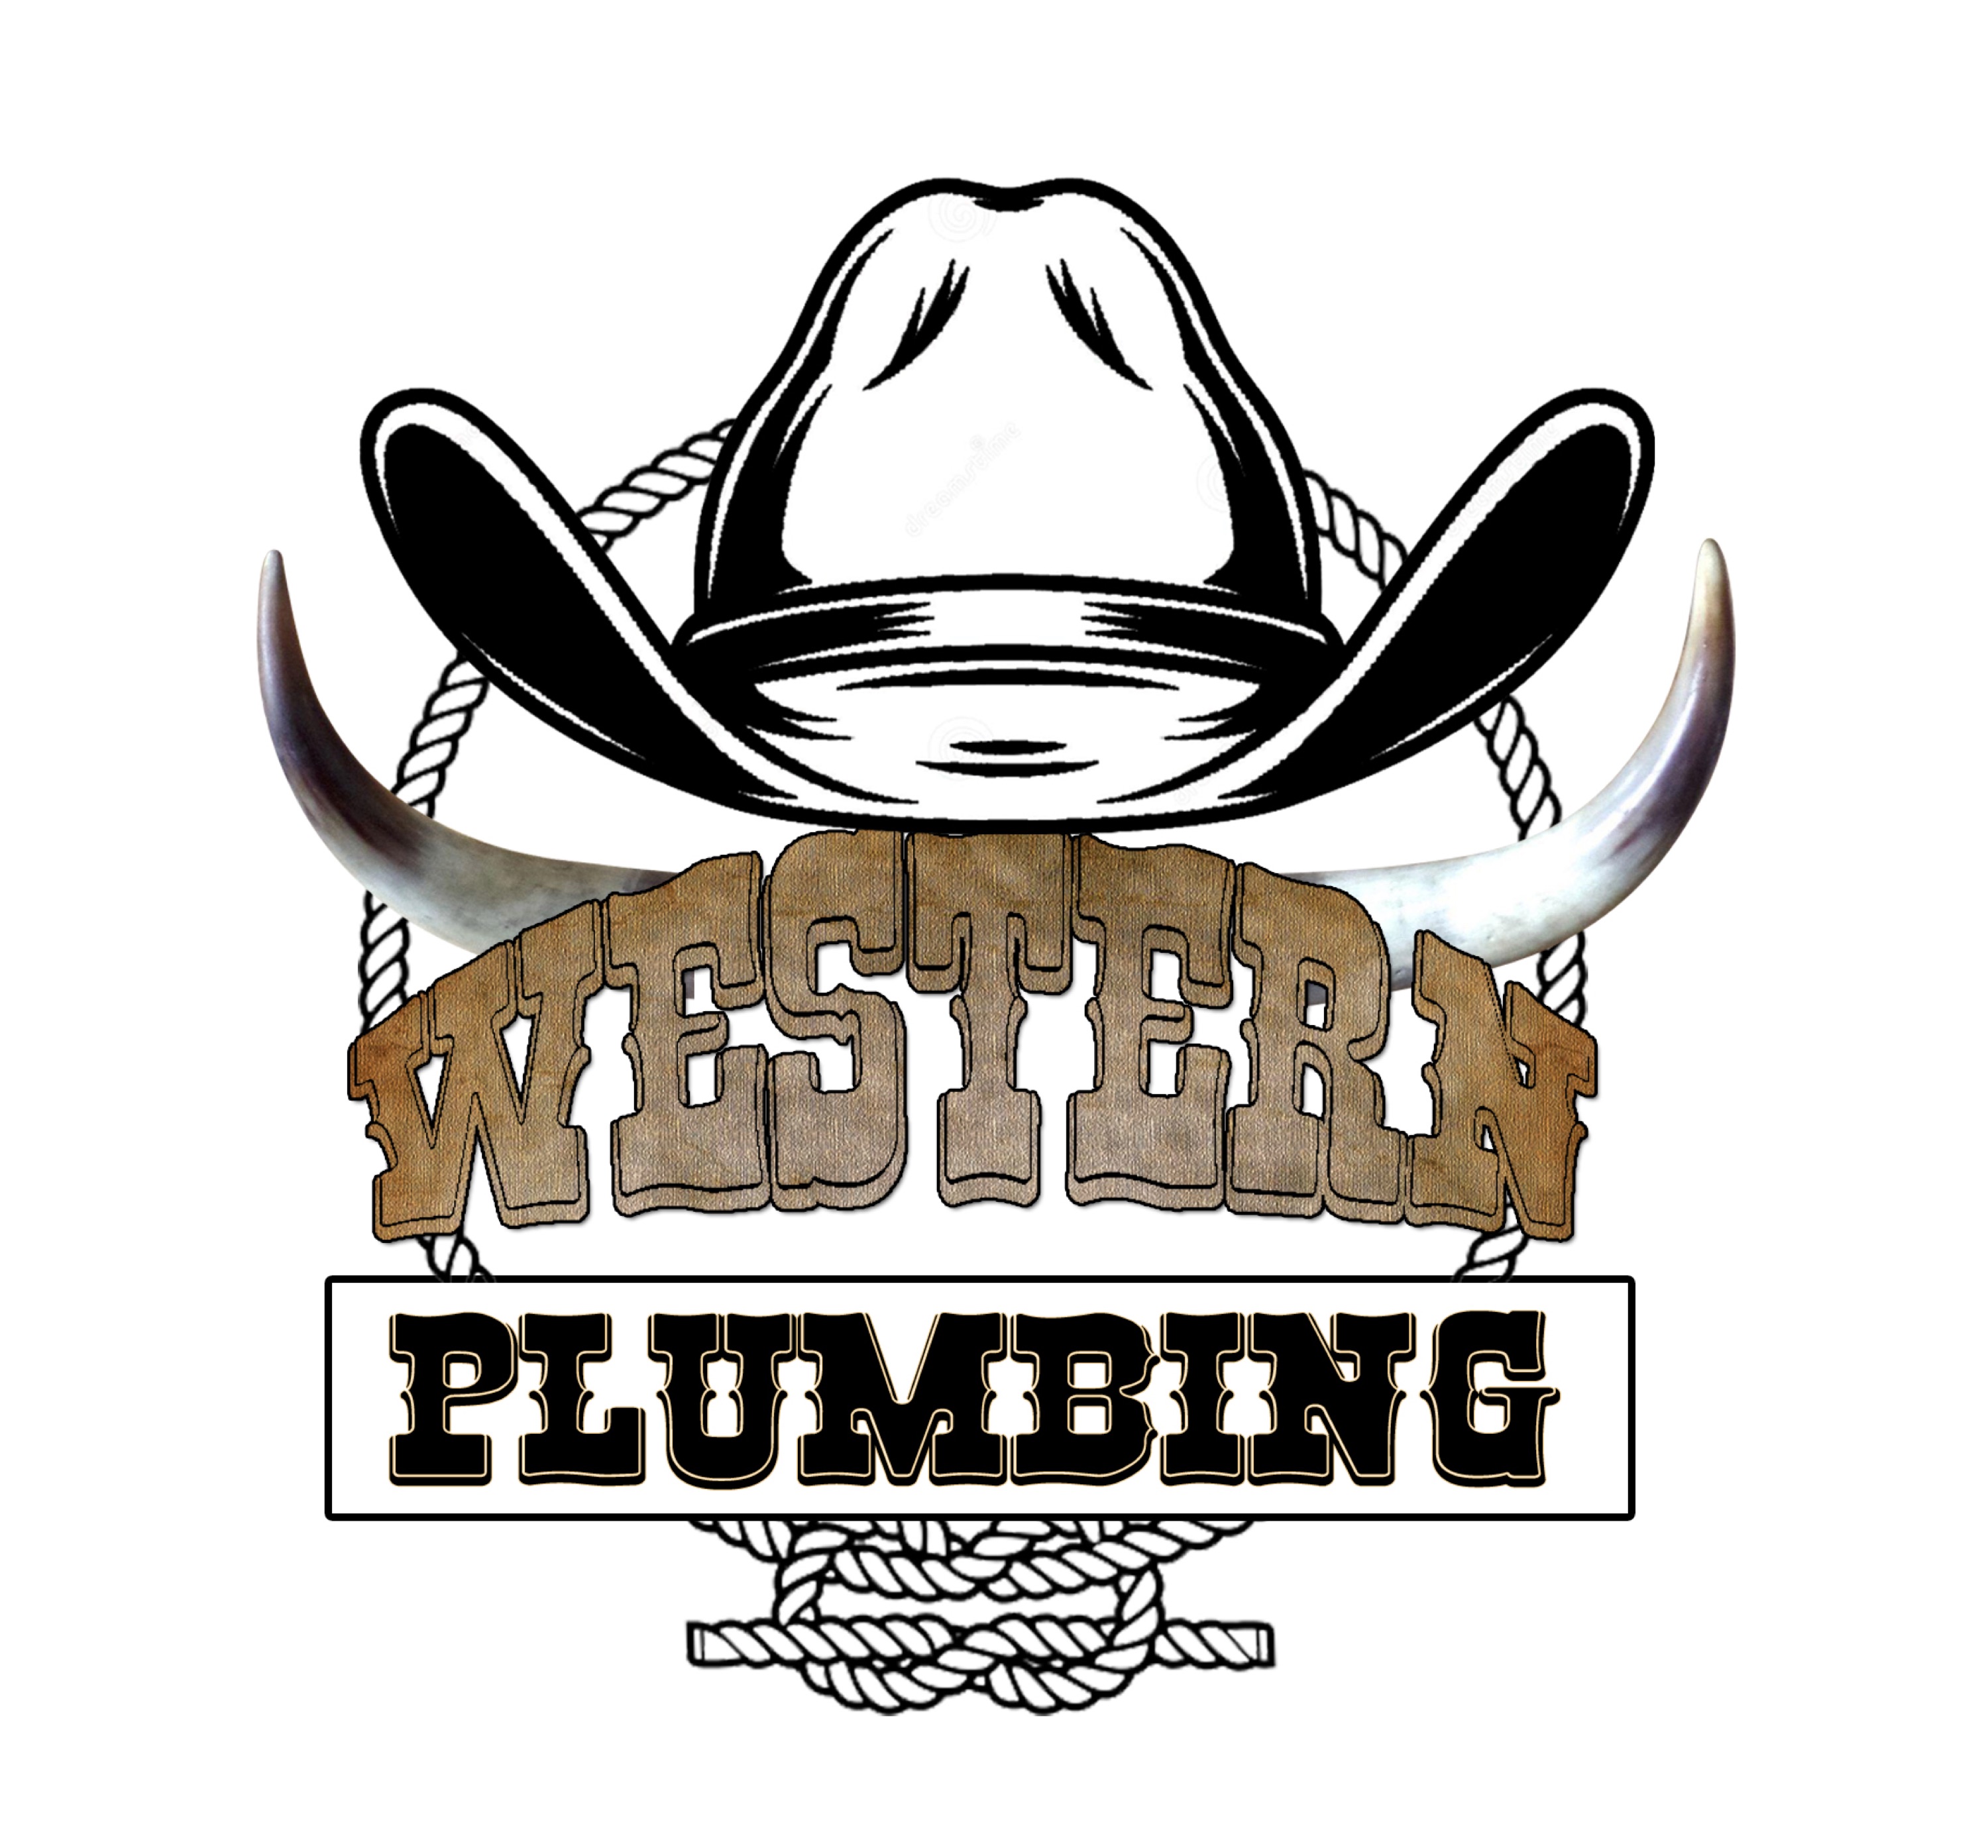 Western Plumbing - Unlicensed Contractor Logo